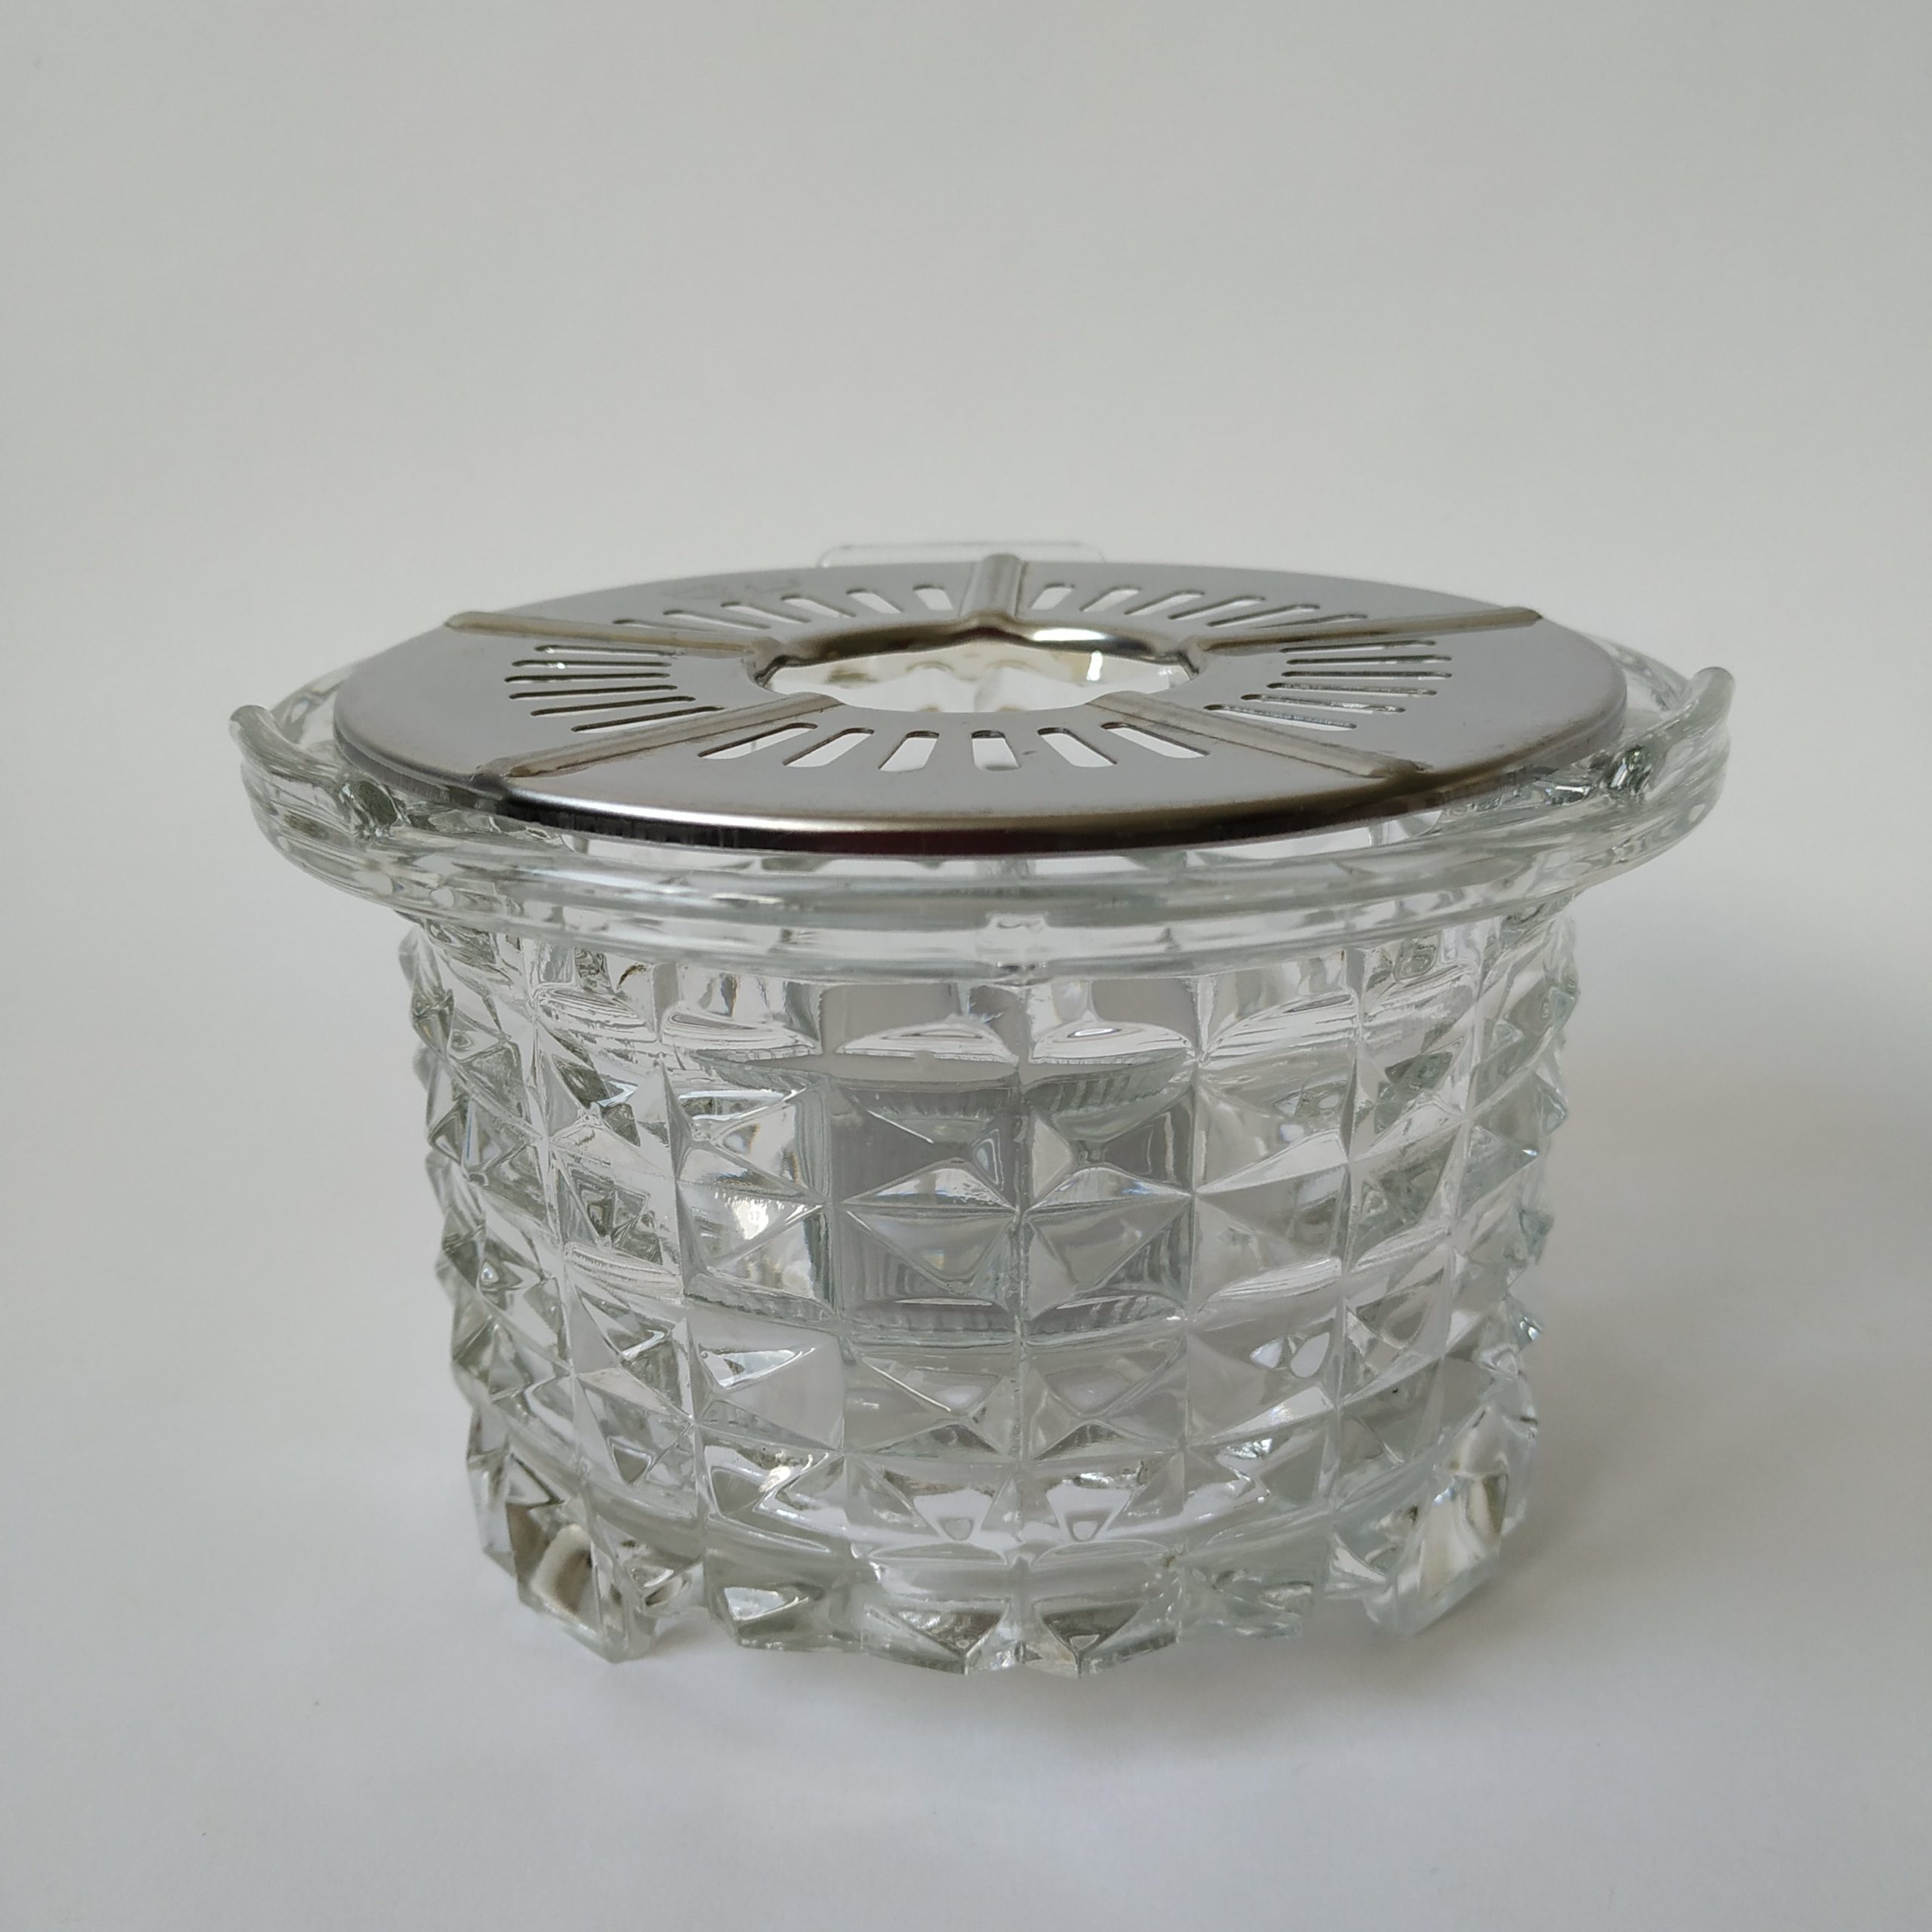 Theelichthouder van glas van Douwe Egberts met zilverkleurig rooster – diameter 14 cm – hoogte 8,5 cm (1)